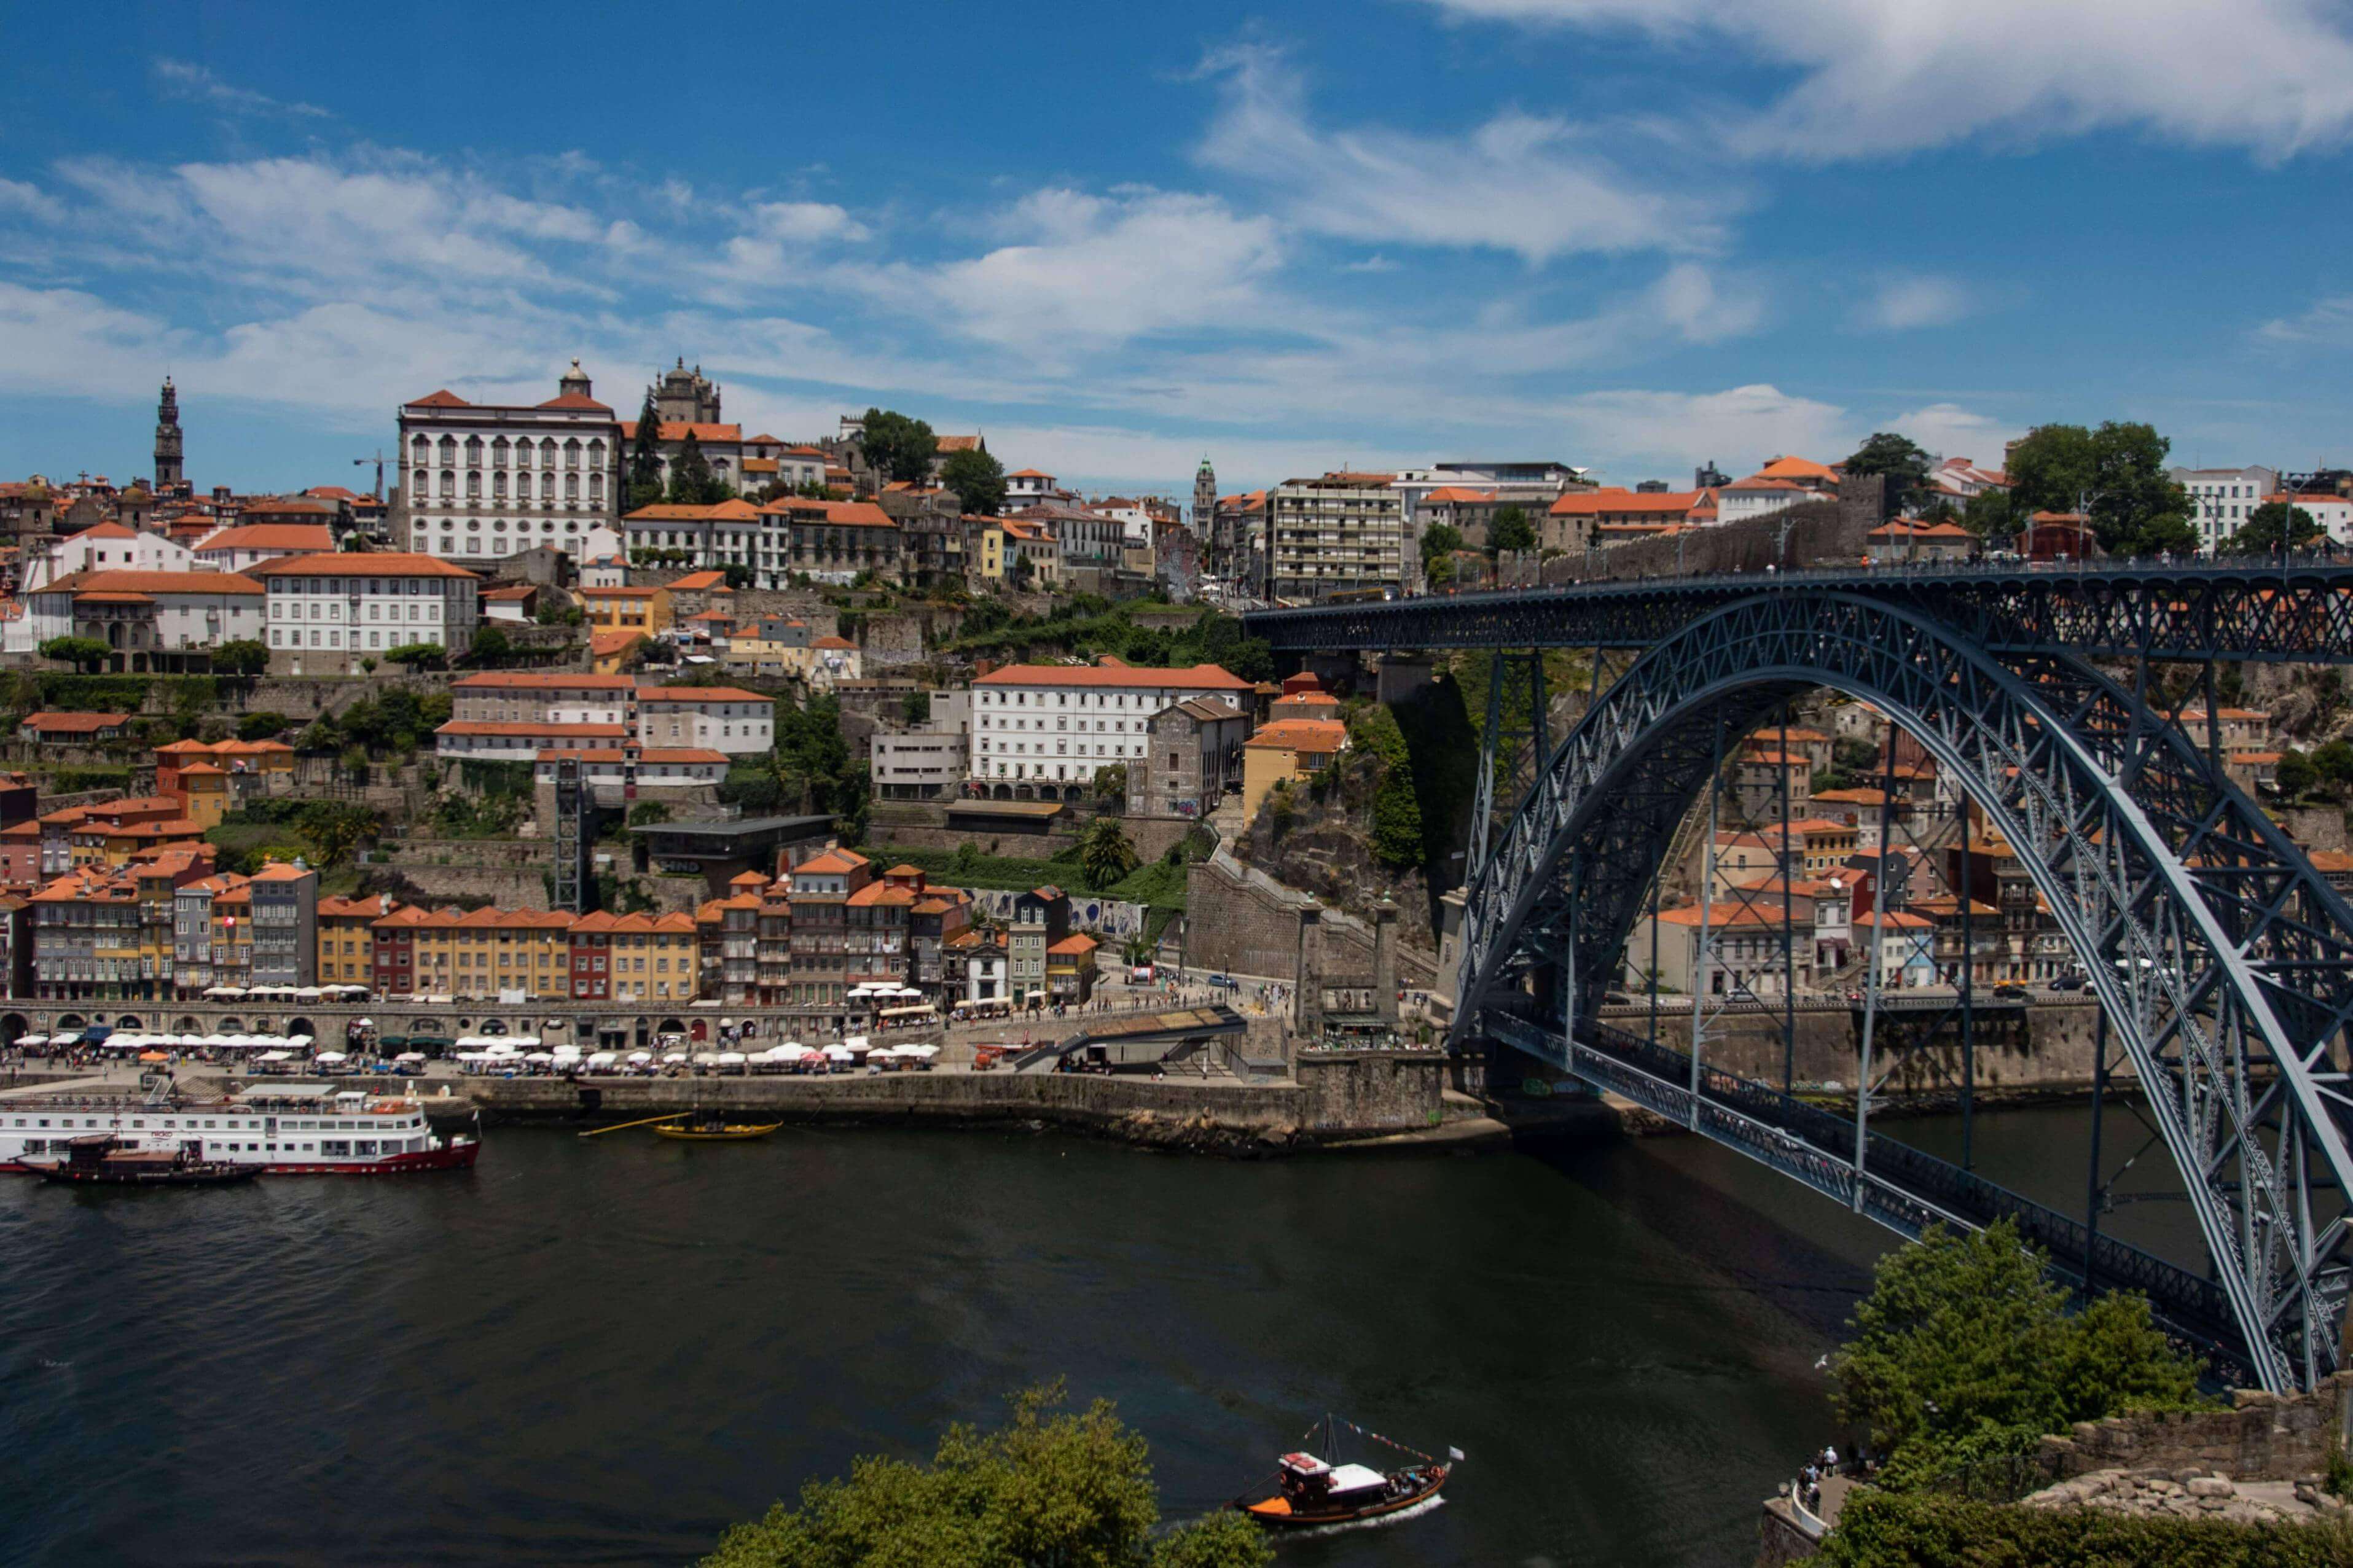 Car rental - rent a car in Porto